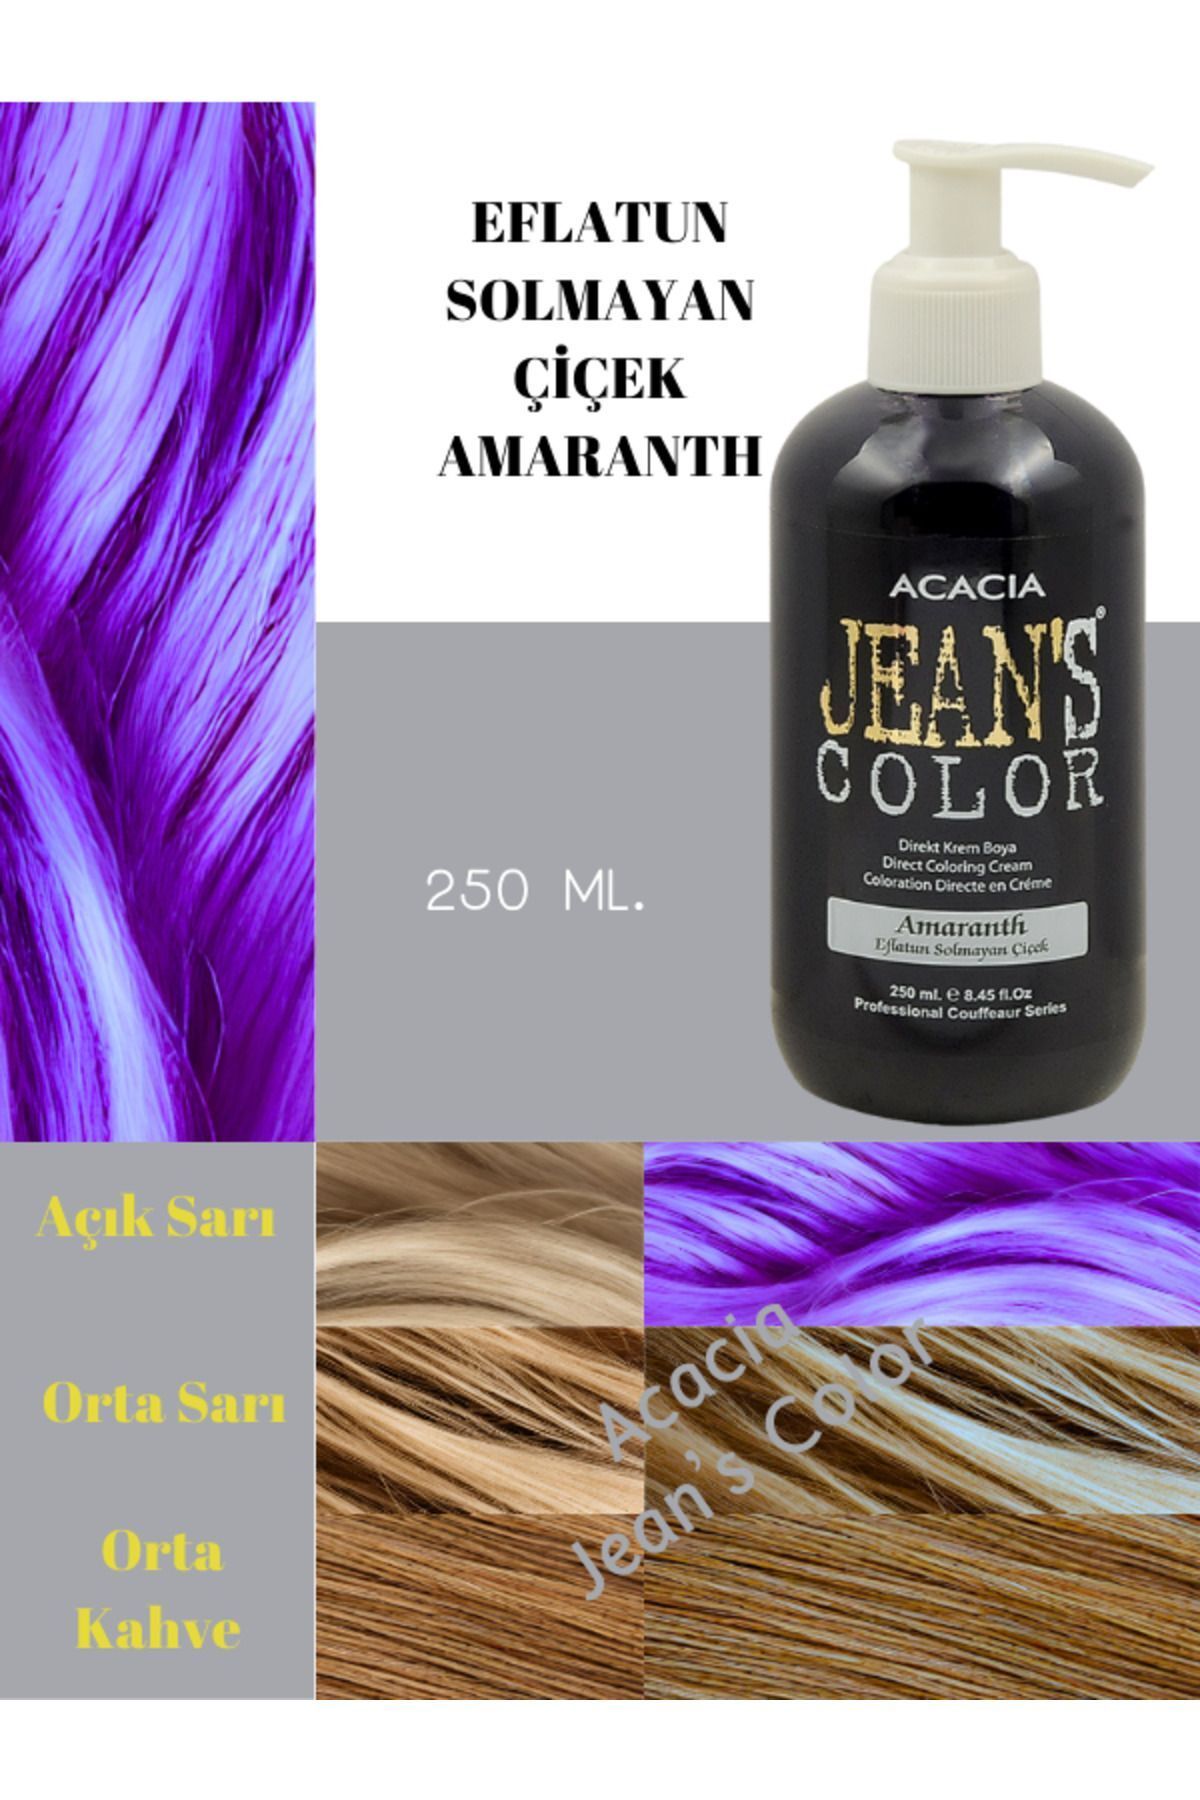 jeans color Amonyaksız Renkli Saç Boyası Eflatun Solmayan Çiçek 250ml. Kokusuz Su Bazlı Amaranth Hair Dye